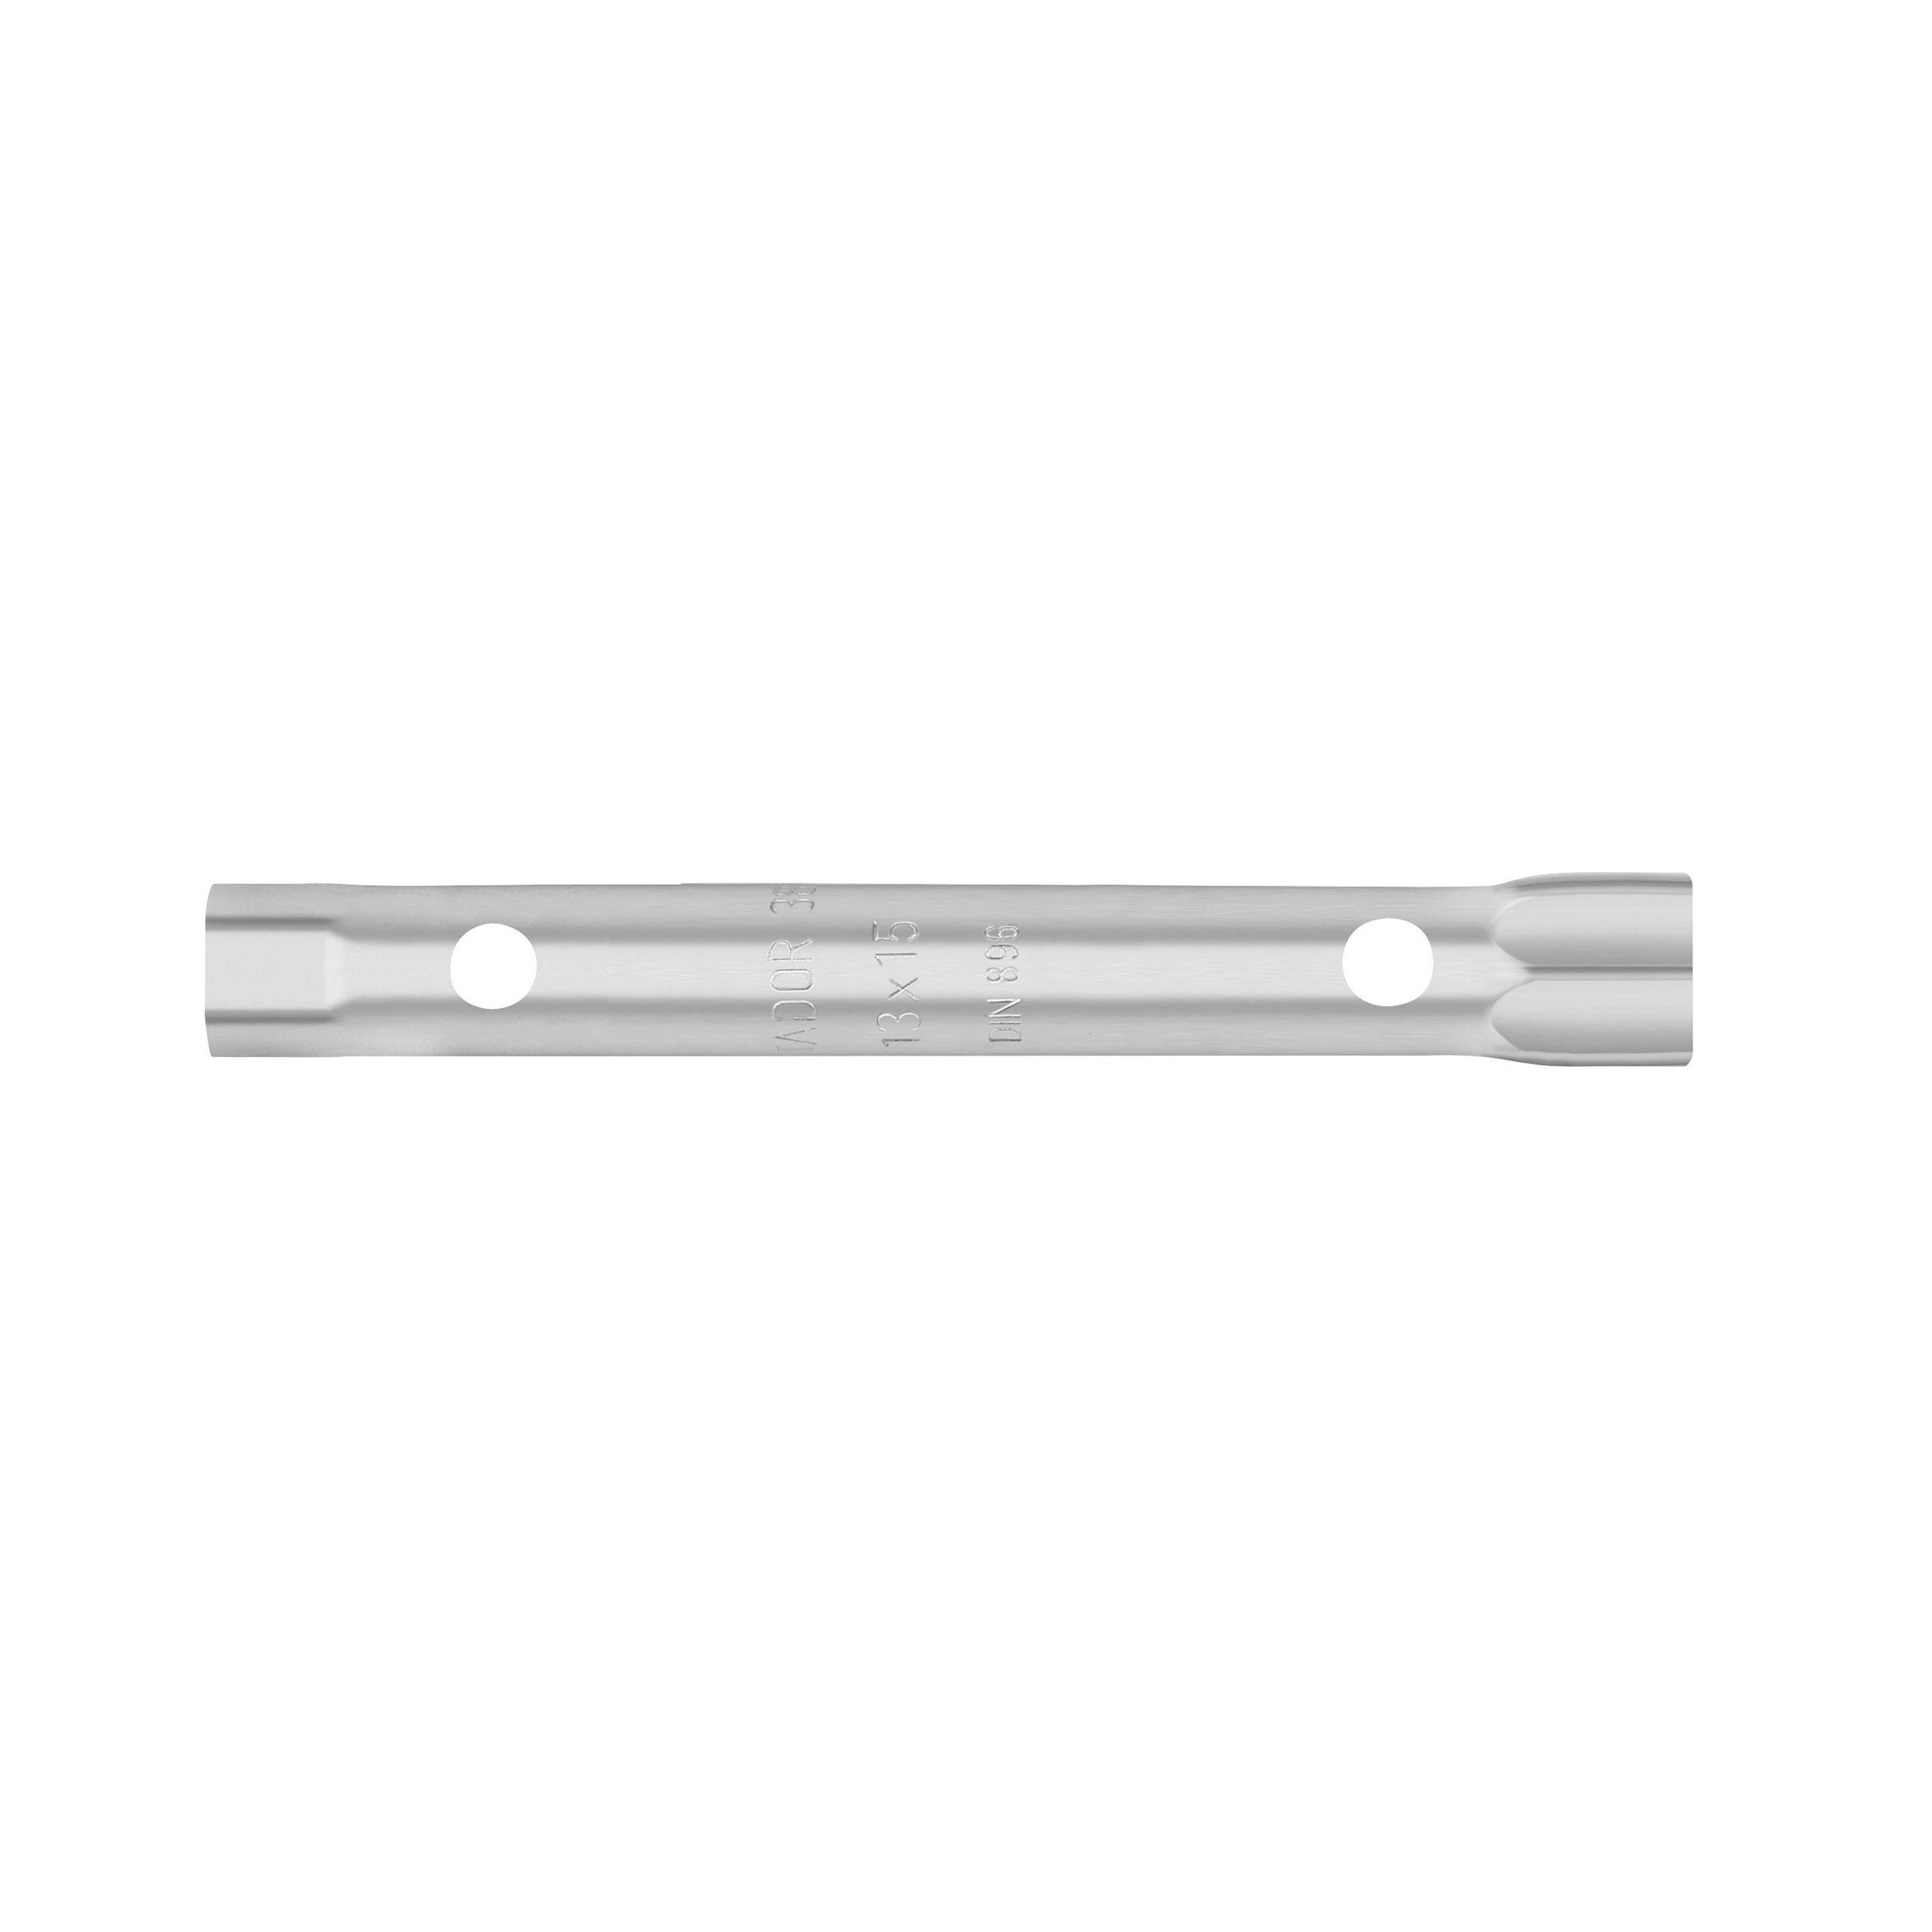 Rohrsteckschlüssel, DIN 896, 21x23 mm, MATADOR Art.-Nr.: 0380 2123